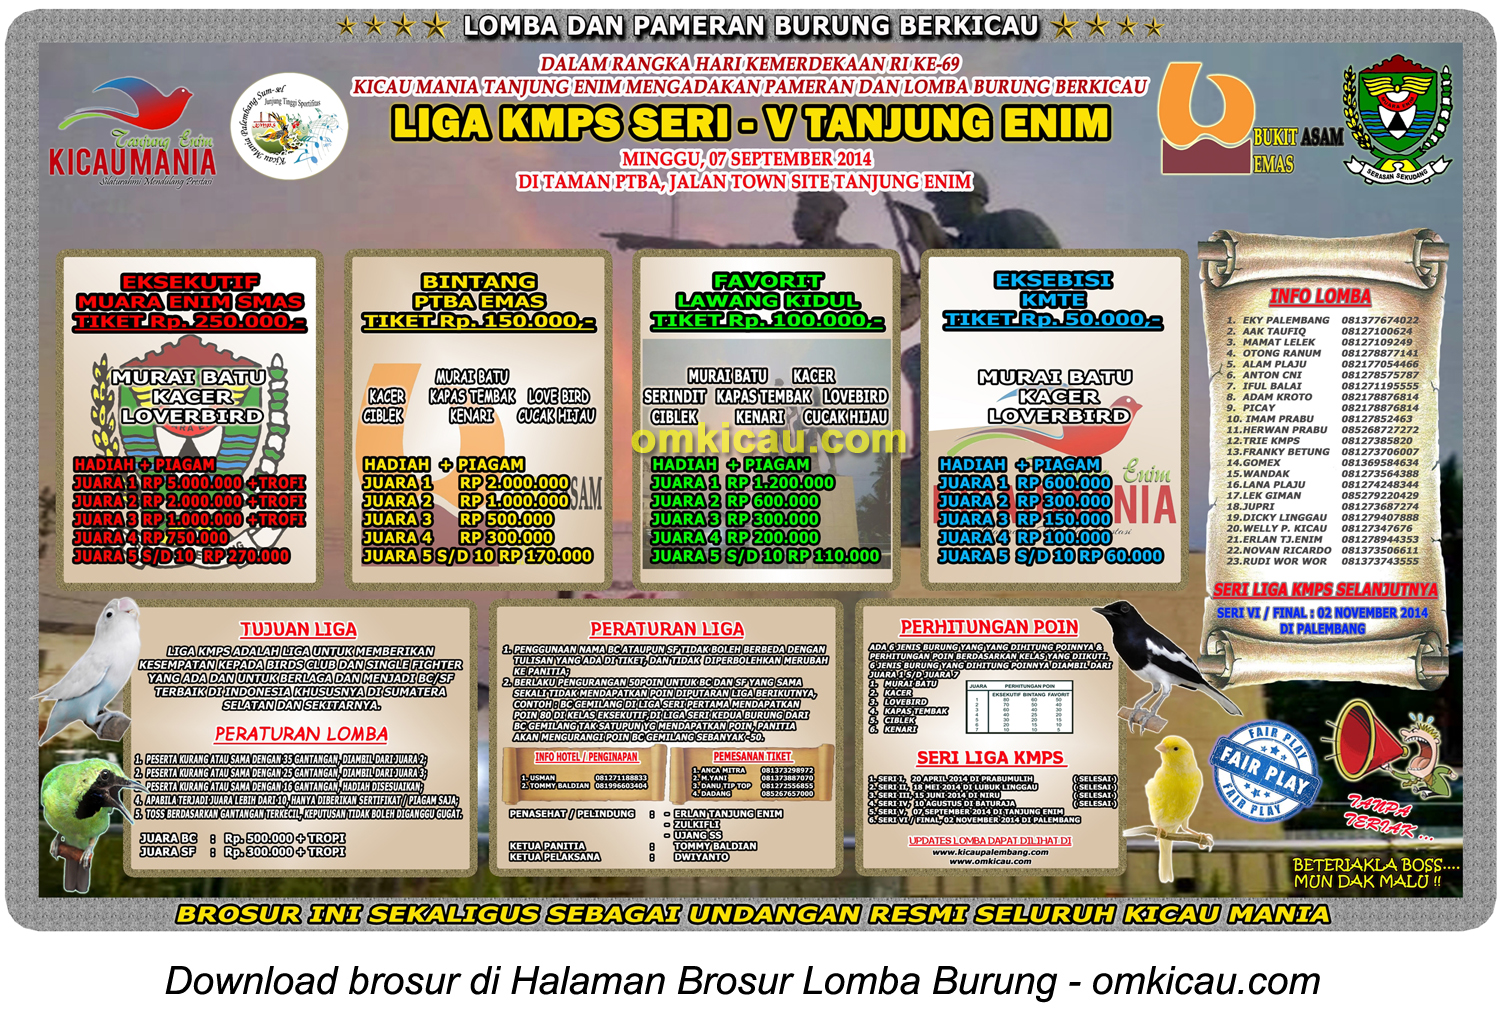 Brosur Lomba Burung Berkicau Liga KMPS Seri V, Tanjung Enim, 7 September 2014